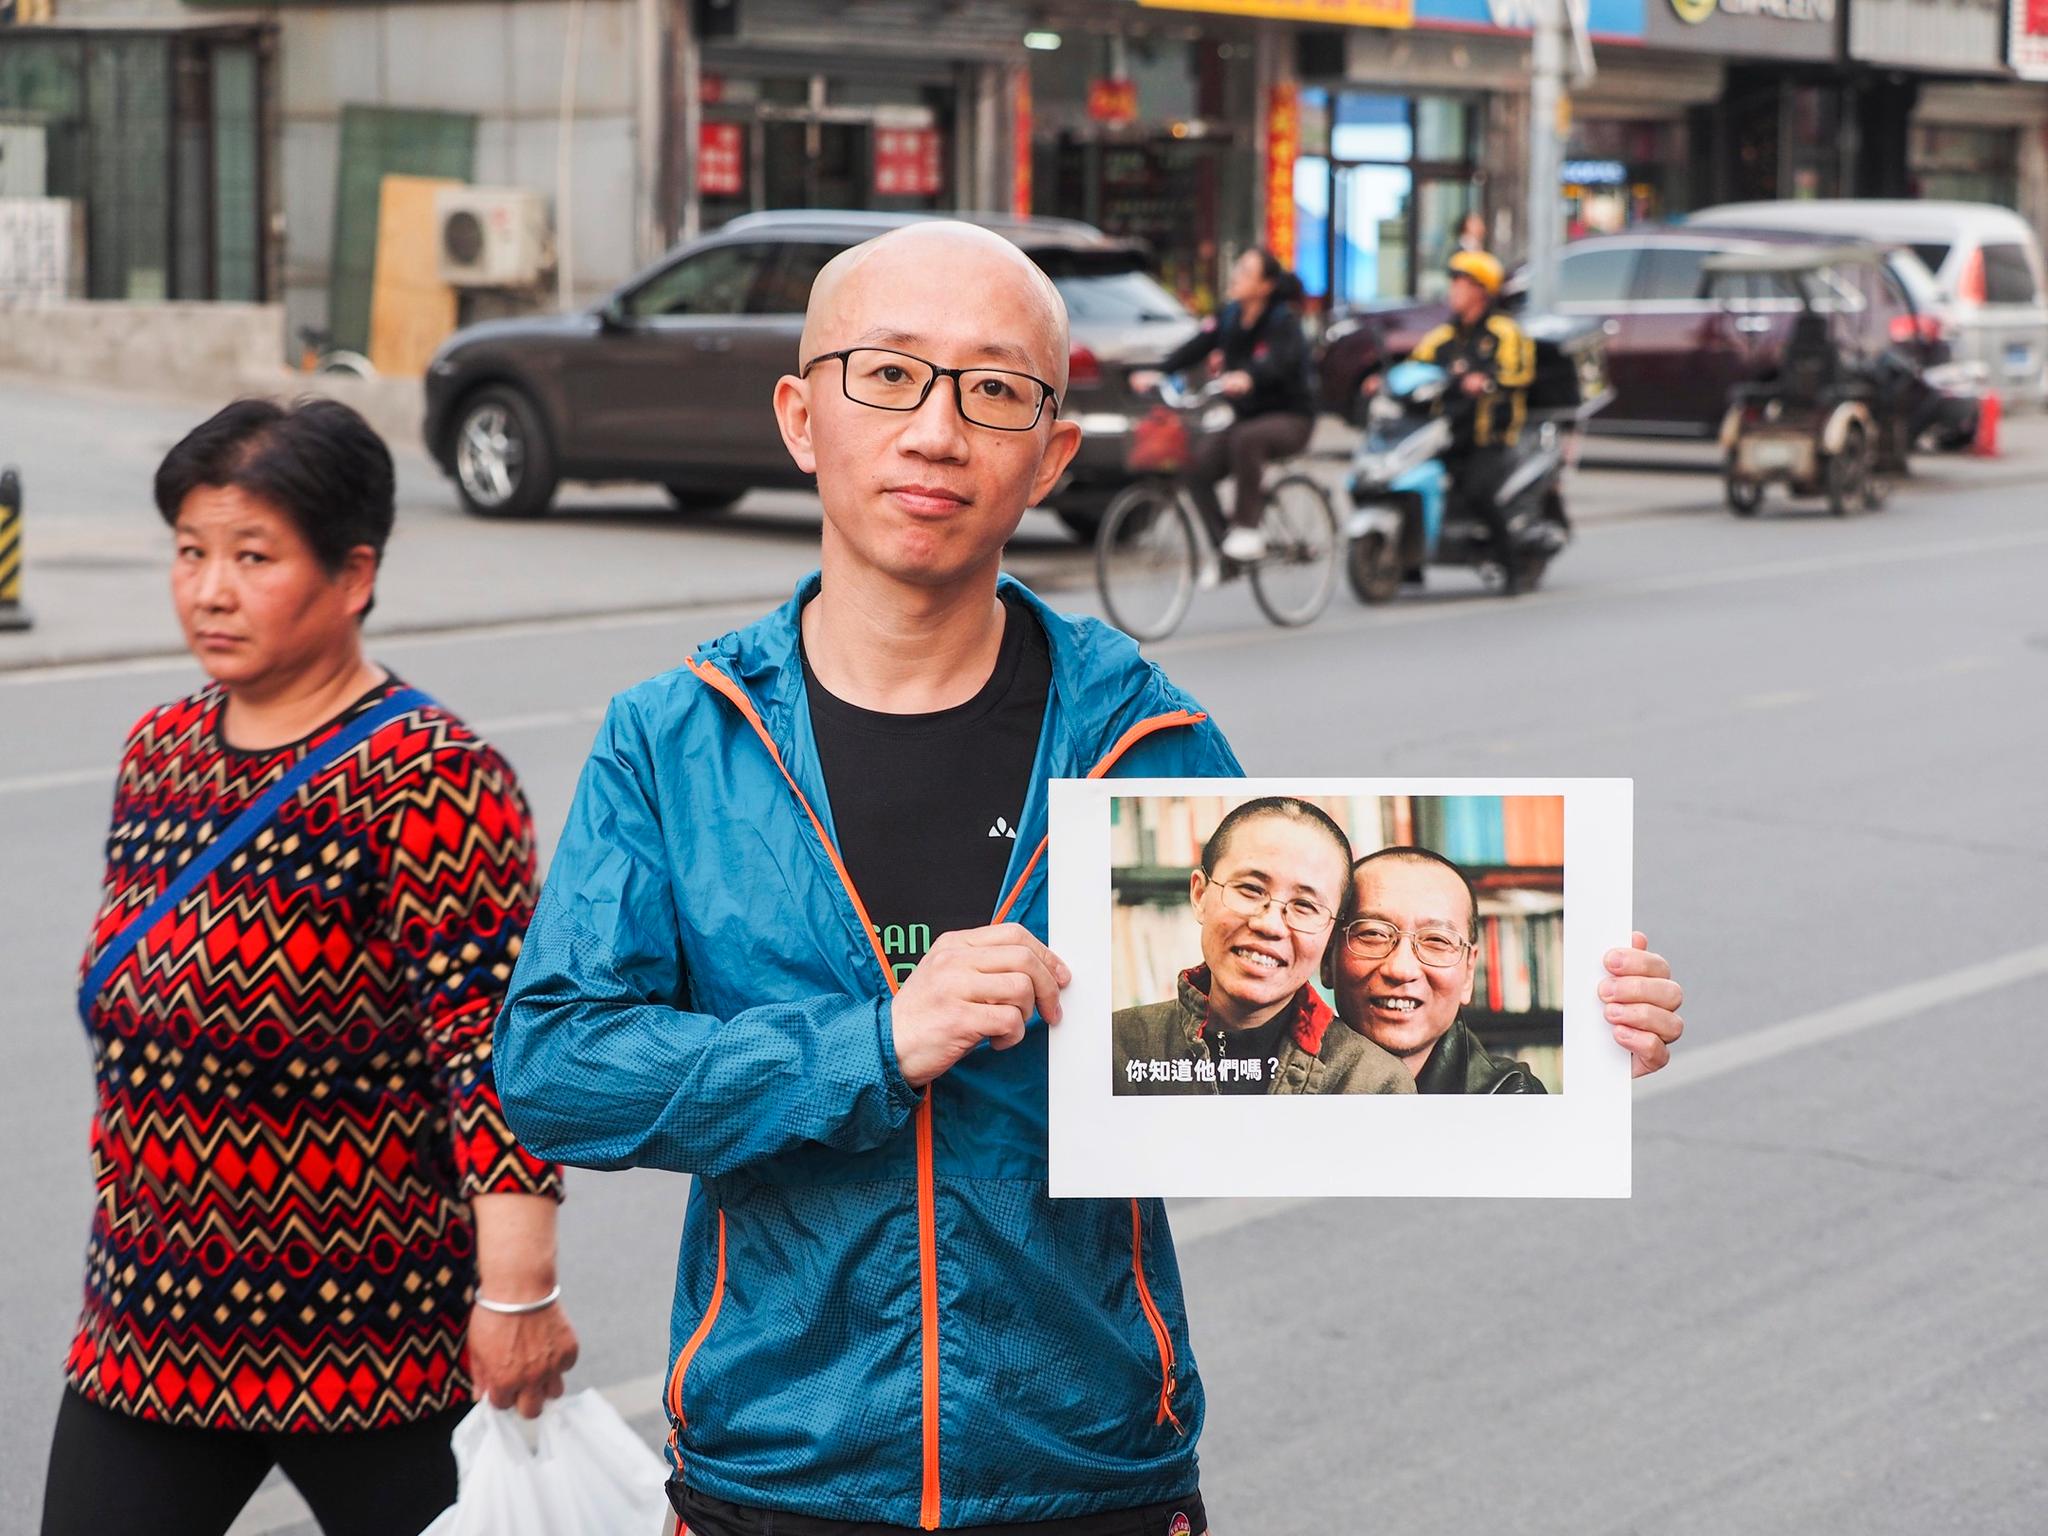  Aktivisten Hu Jia viser frem portrettet av sine venner, nobelprisvinner Liu Xiaobo og hans kone Liu Xia foran Erna Solbergs Kina-besøk i april 